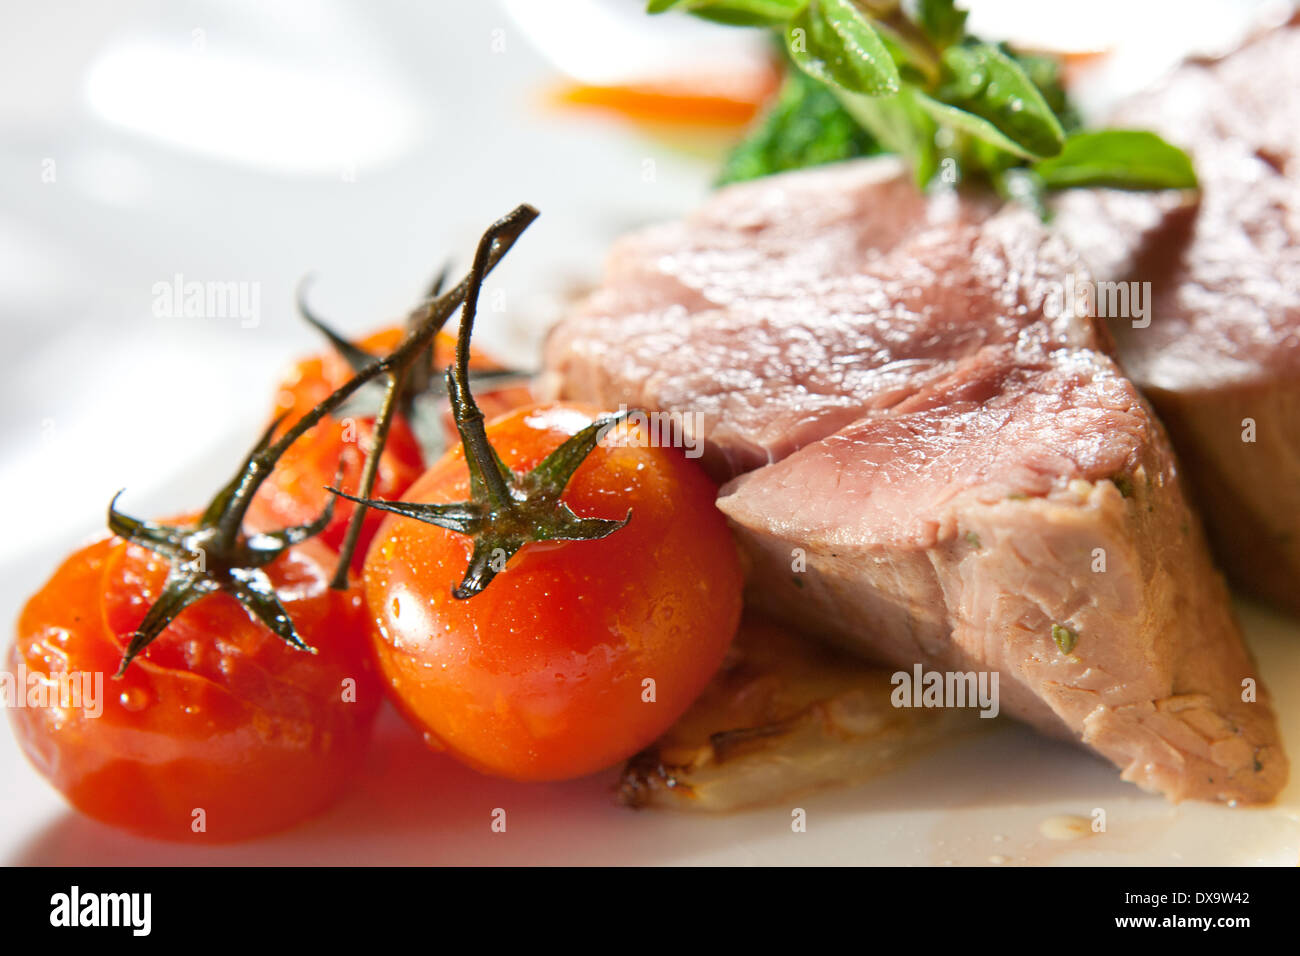 pork with tomatoes, turnips, rosemary, zucchini and vinegar Stock Photo